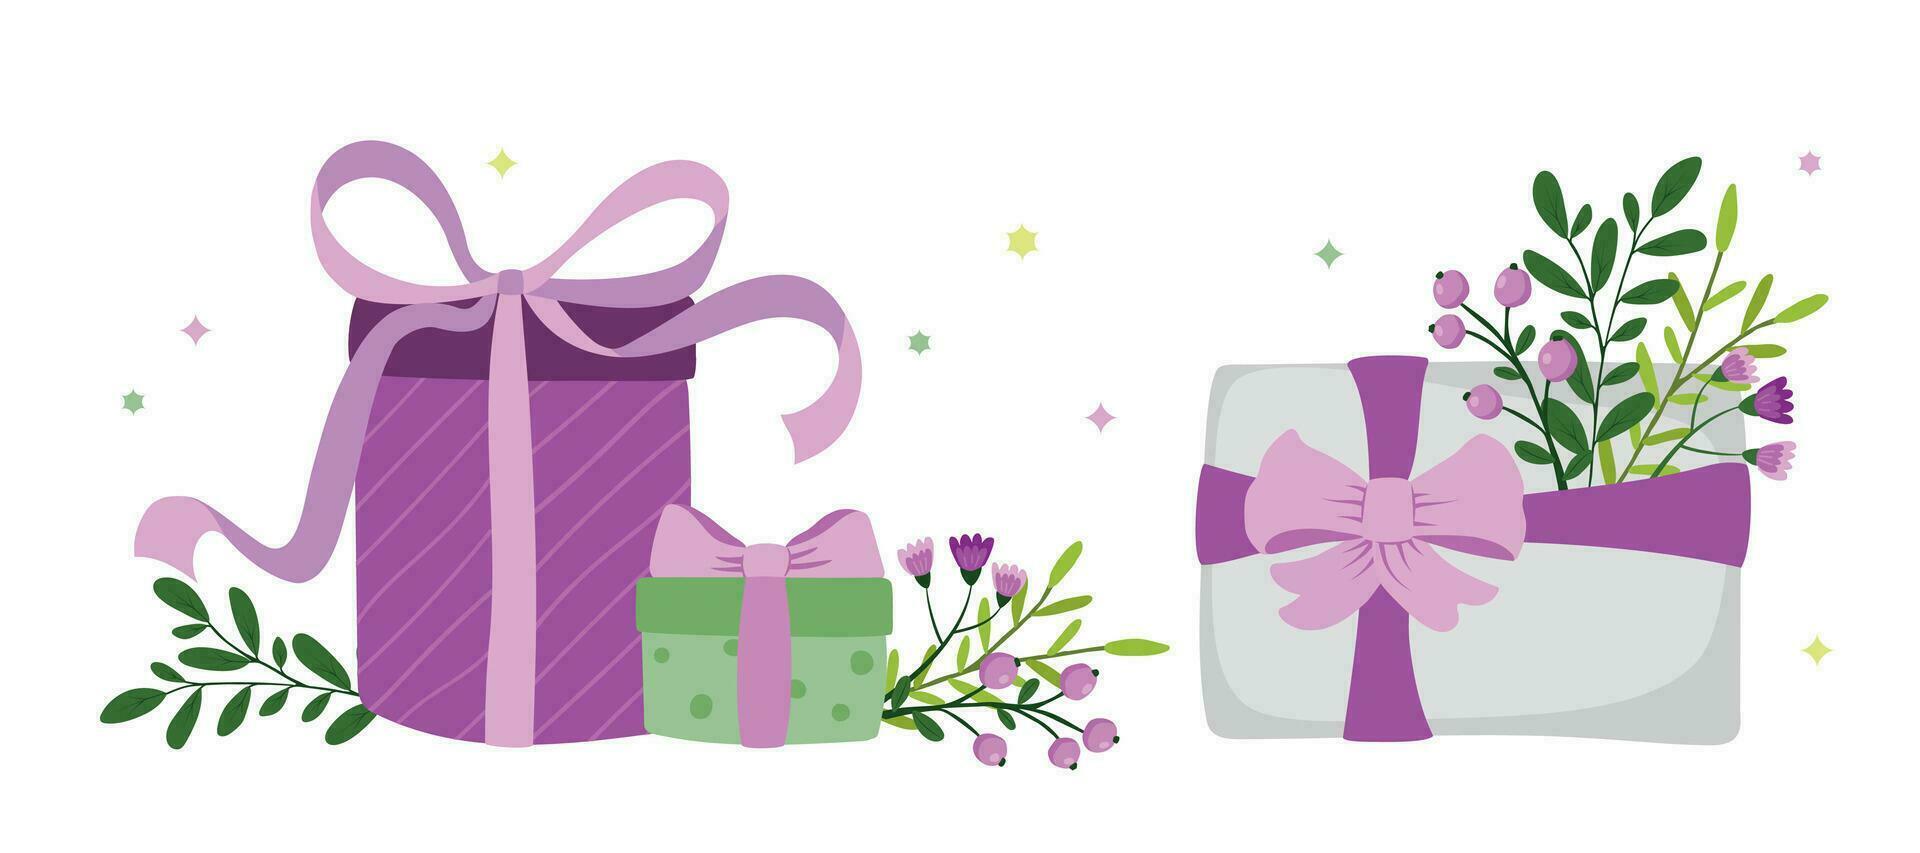 conjunto regalo cajas con flor ramos de flores mano dibujado. vector decorativo elementos para el diseño de impreso productos y textiles.